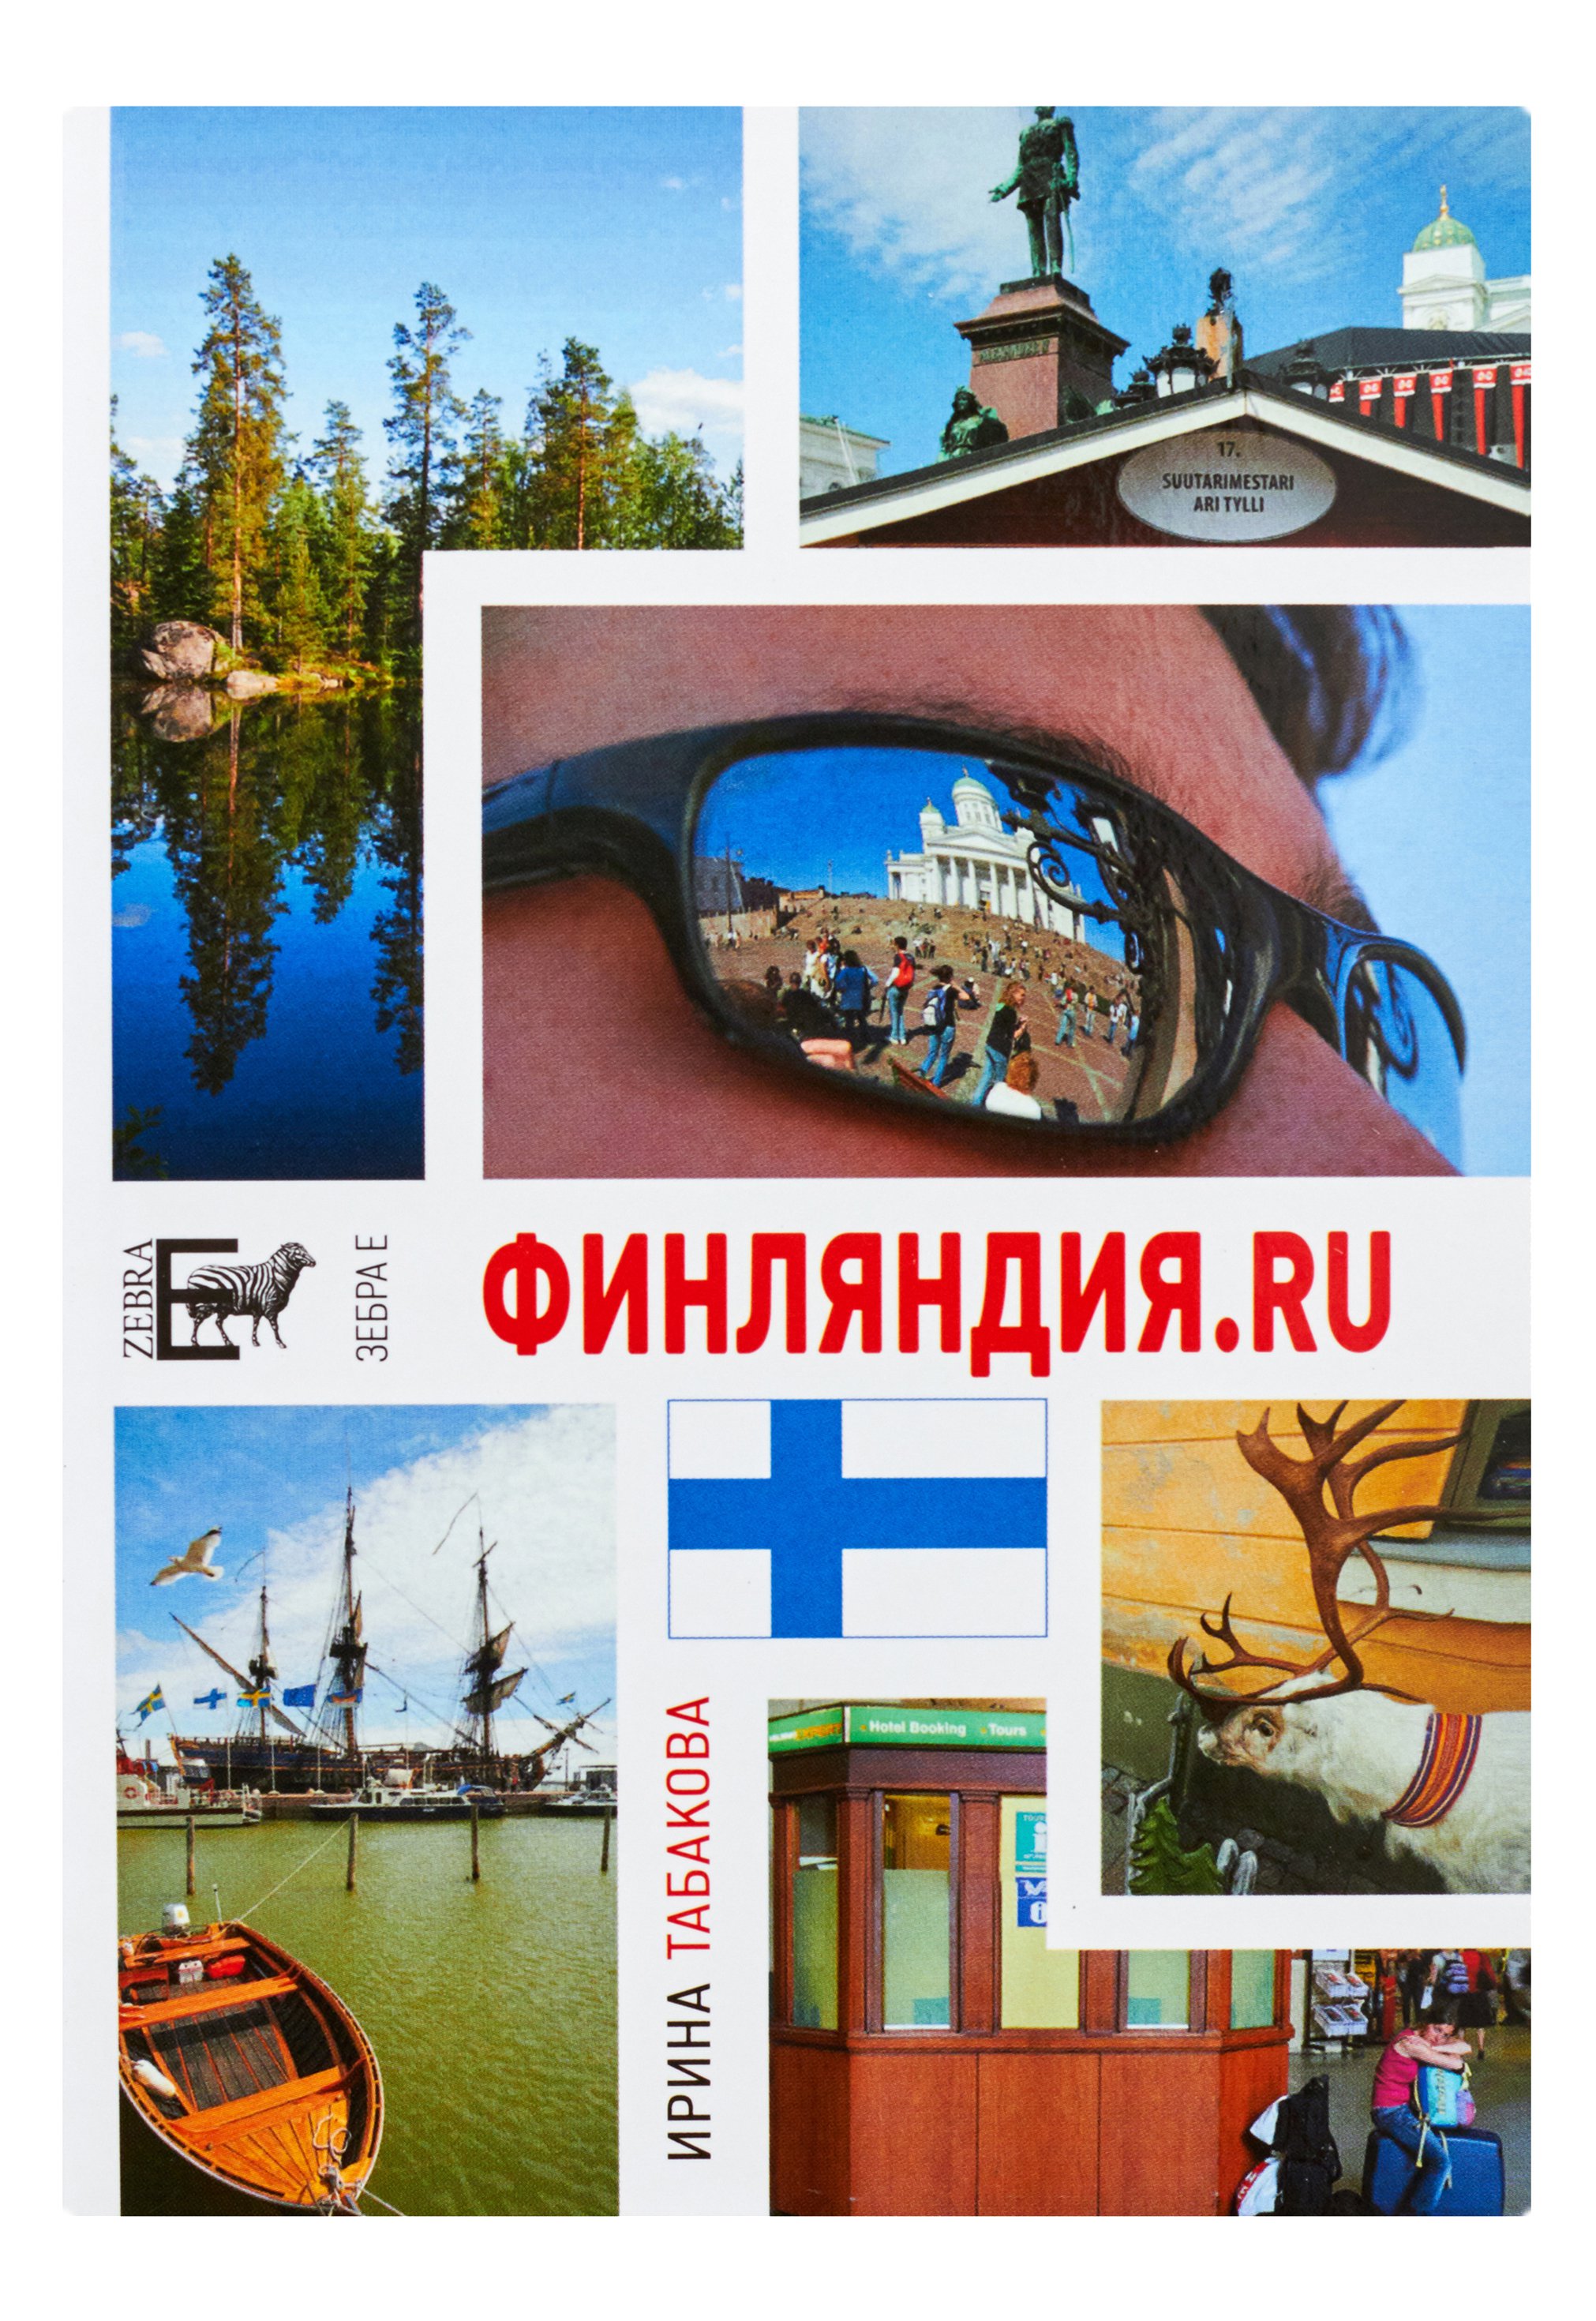 Финляндия.ru. 12 Chairs OY, или Бизнес-иммиграция в Финляндию (личный опыт)